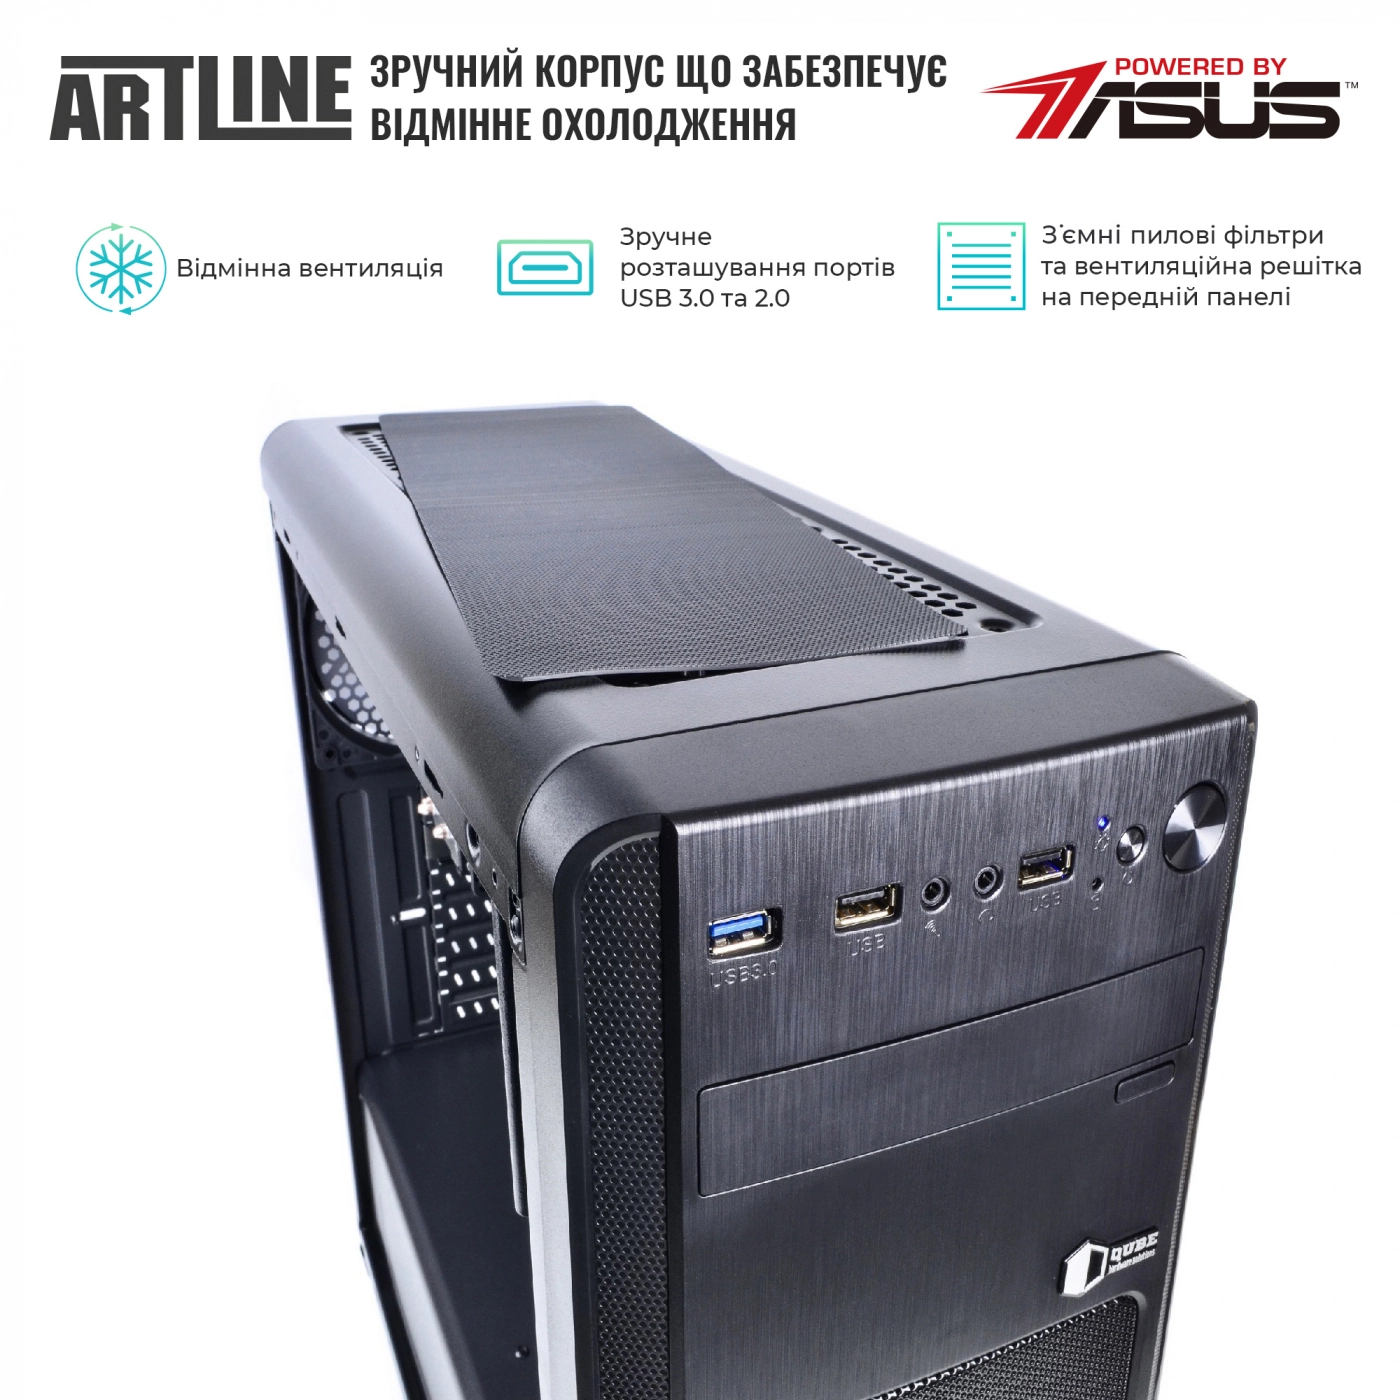 Купить Сервер ARTLINE Business T19v20 - фото 2